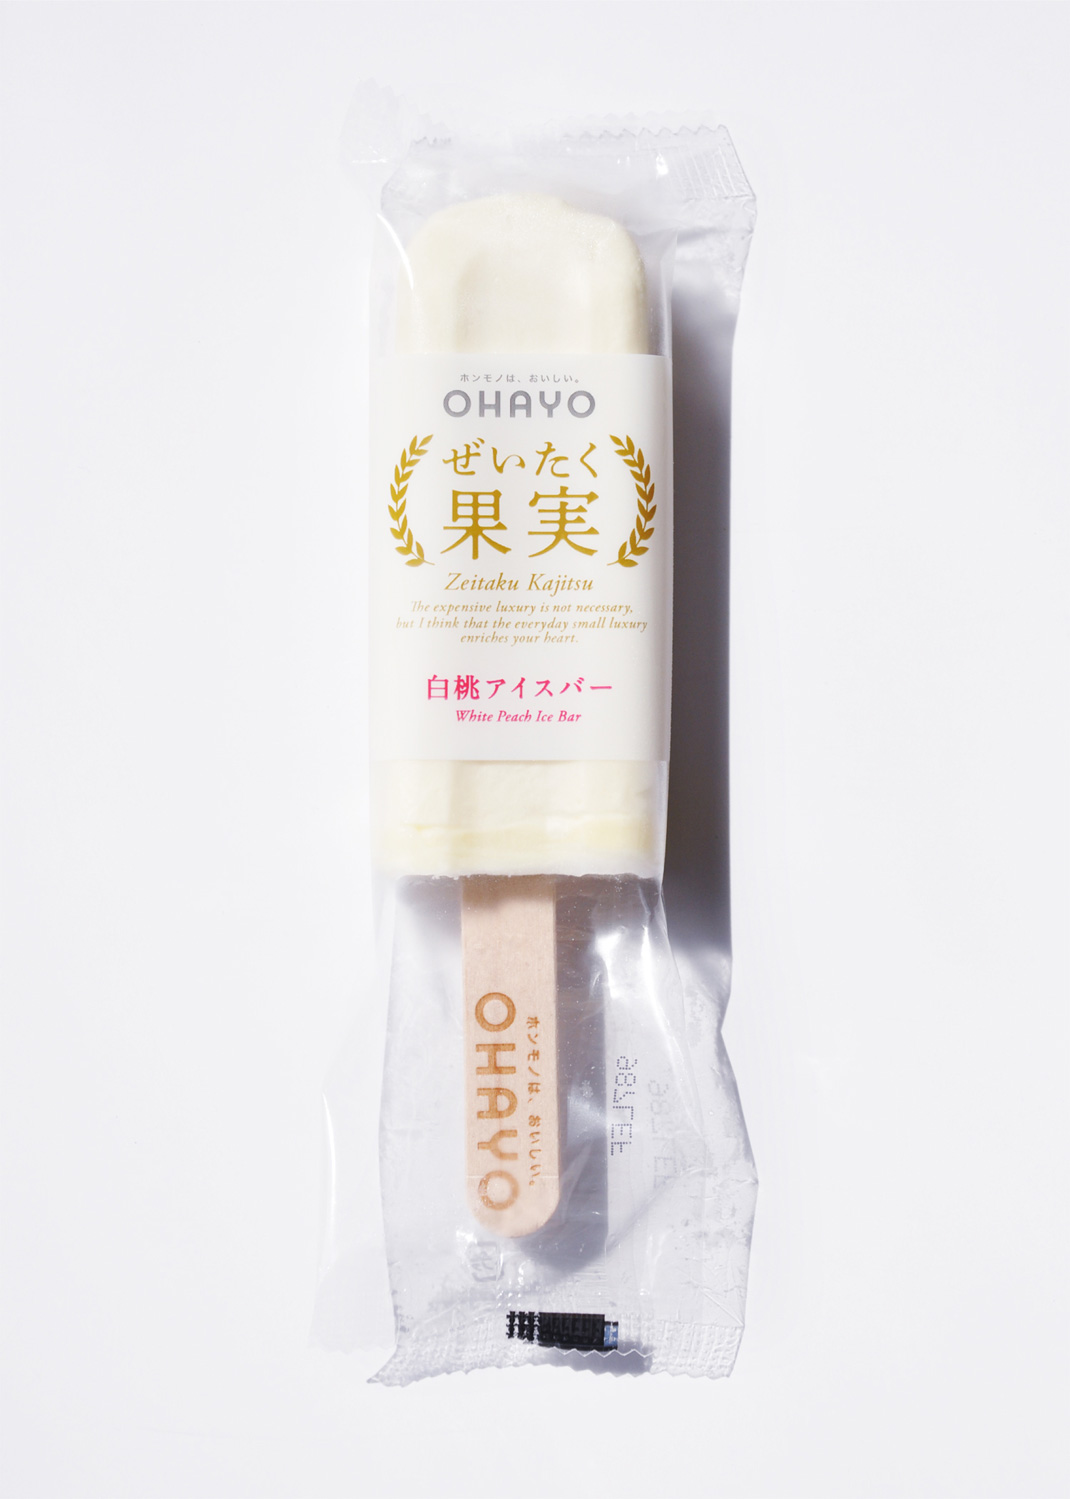 日本白桃雪糕包装设计 日本 雪糕 图标 包装设计 餐厅LOGO VI设计 空间设计 视觉餐饮